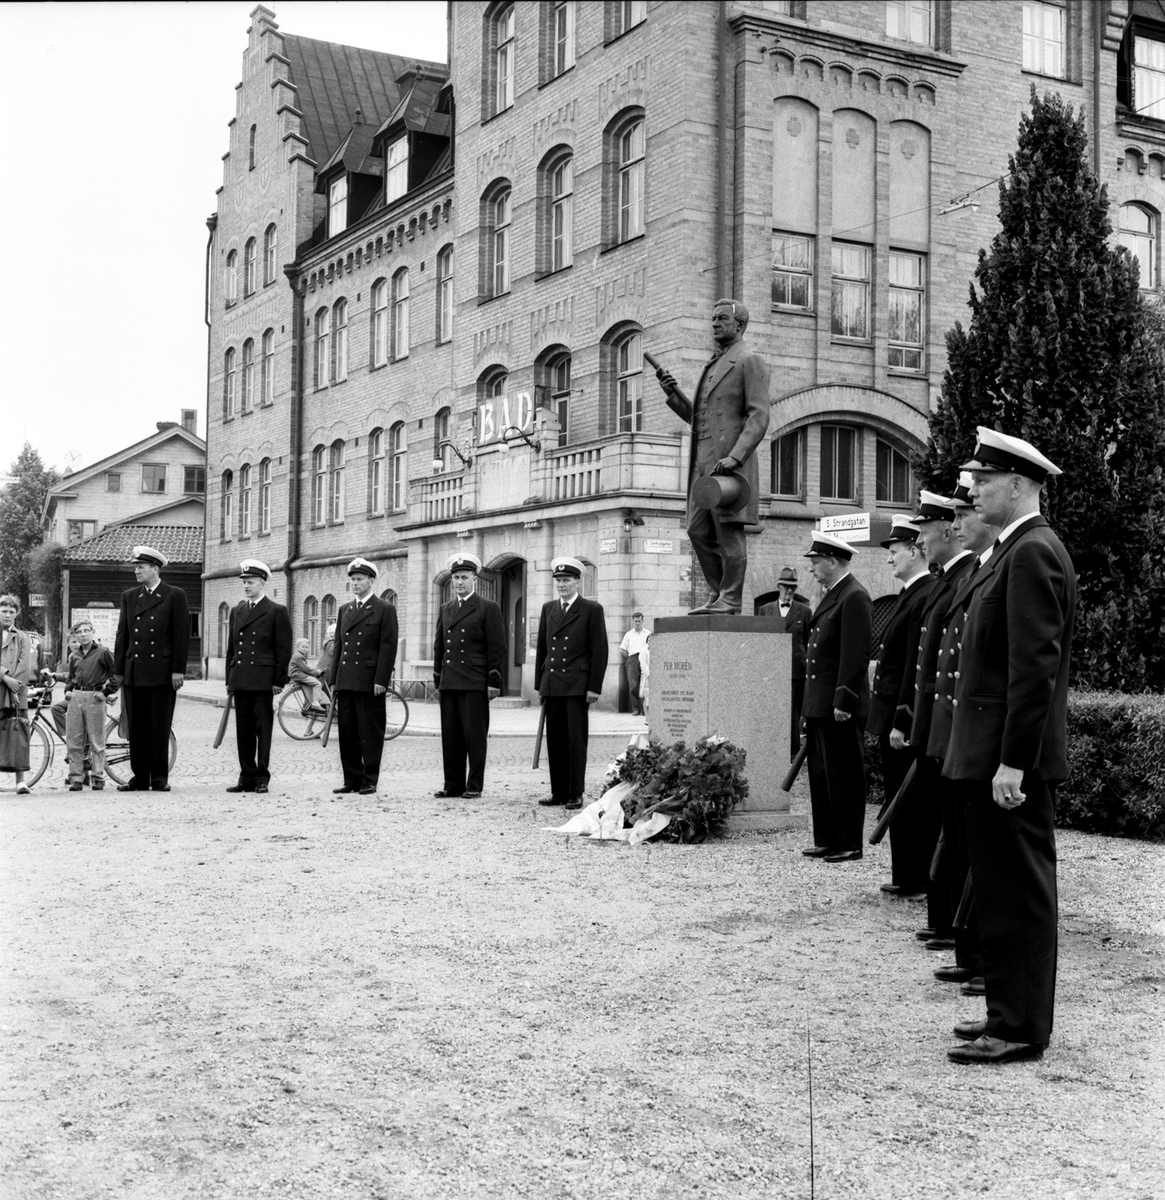 GDJ (Gävle-Dala järnväg) 100-årsjubilerar 1959. På bilden syns en staty av Per Murén, som var en av initiativtagarna till järnvägen. Byggnaden i bakgrunden är Murénska badhuset, uppkallat efter Per Murén.